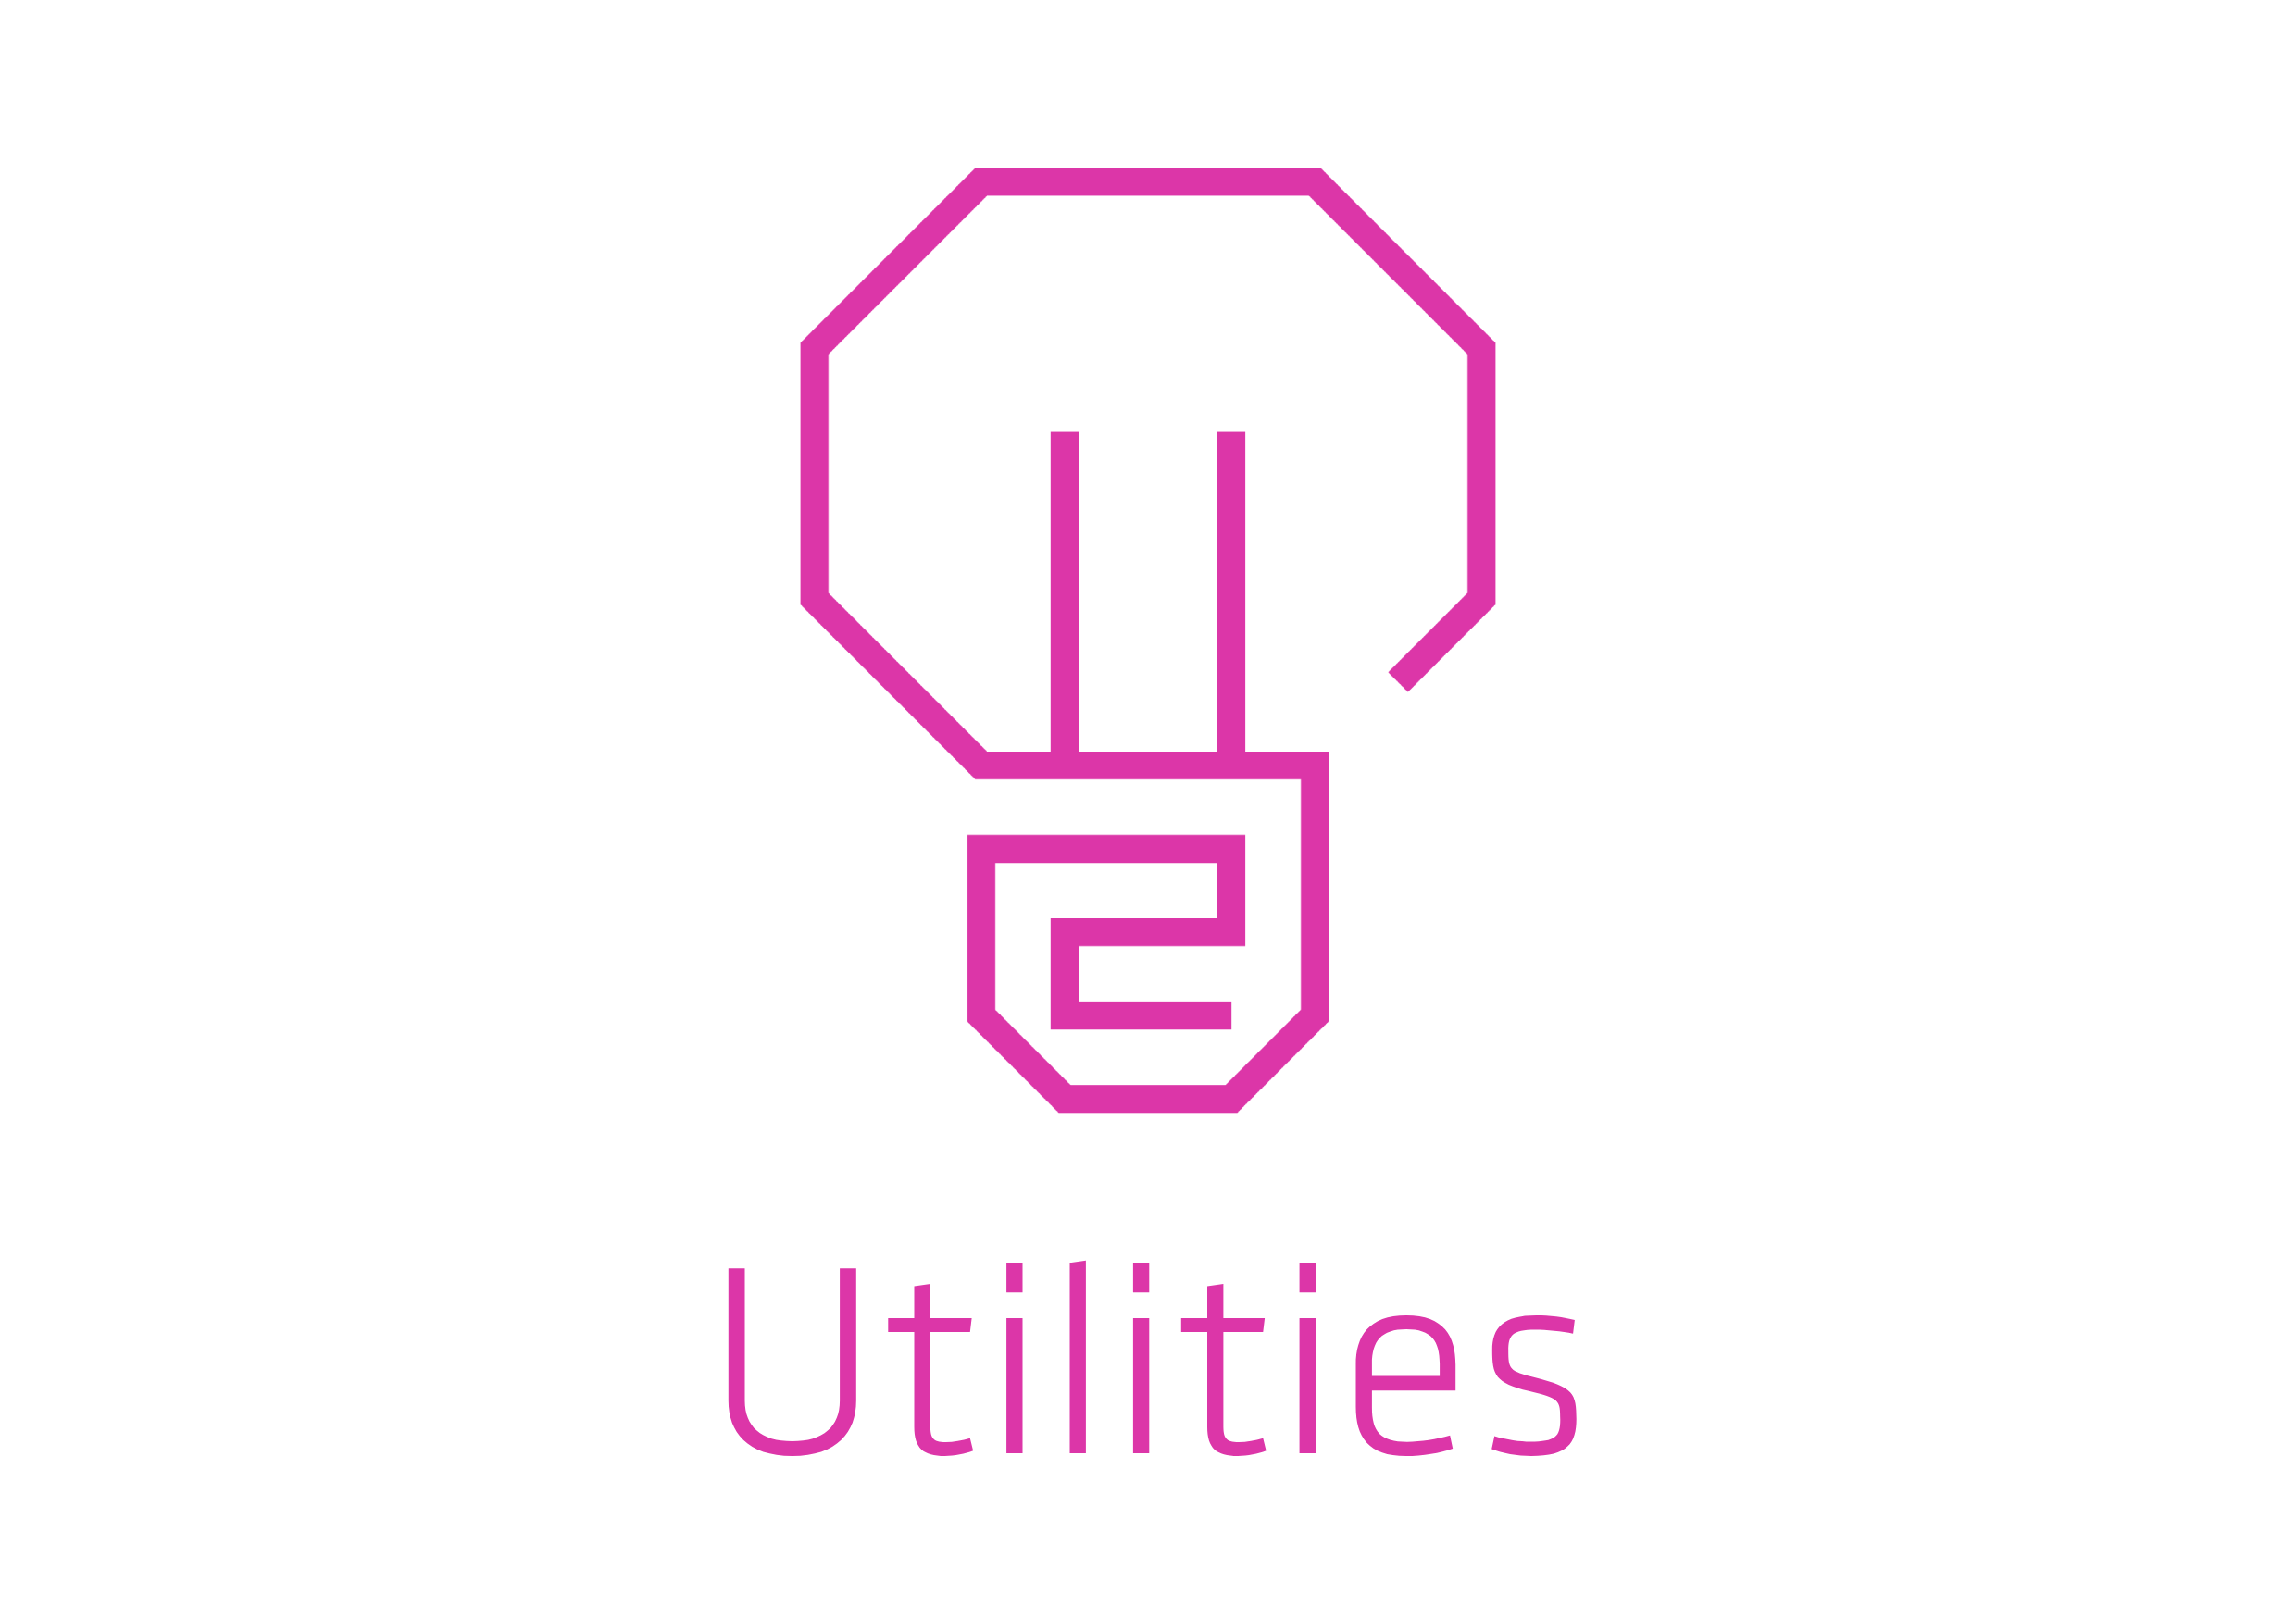 utilities